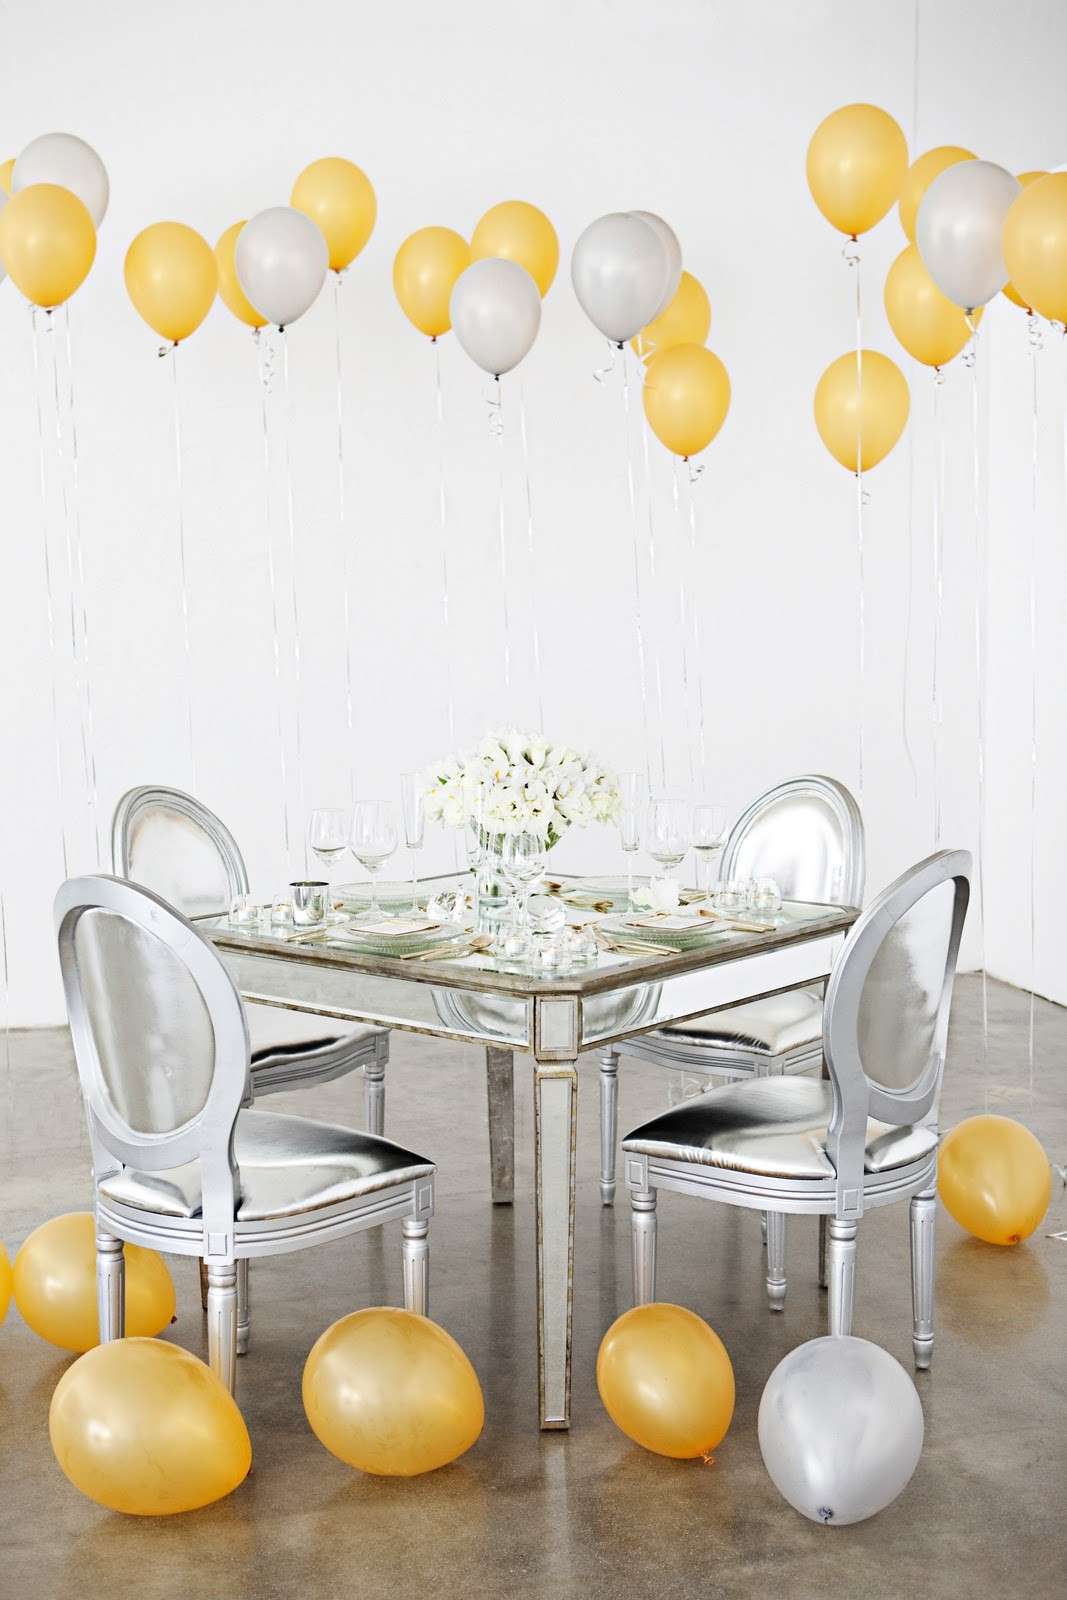 Raffinata decorazione con palloncini gialli e bianchi